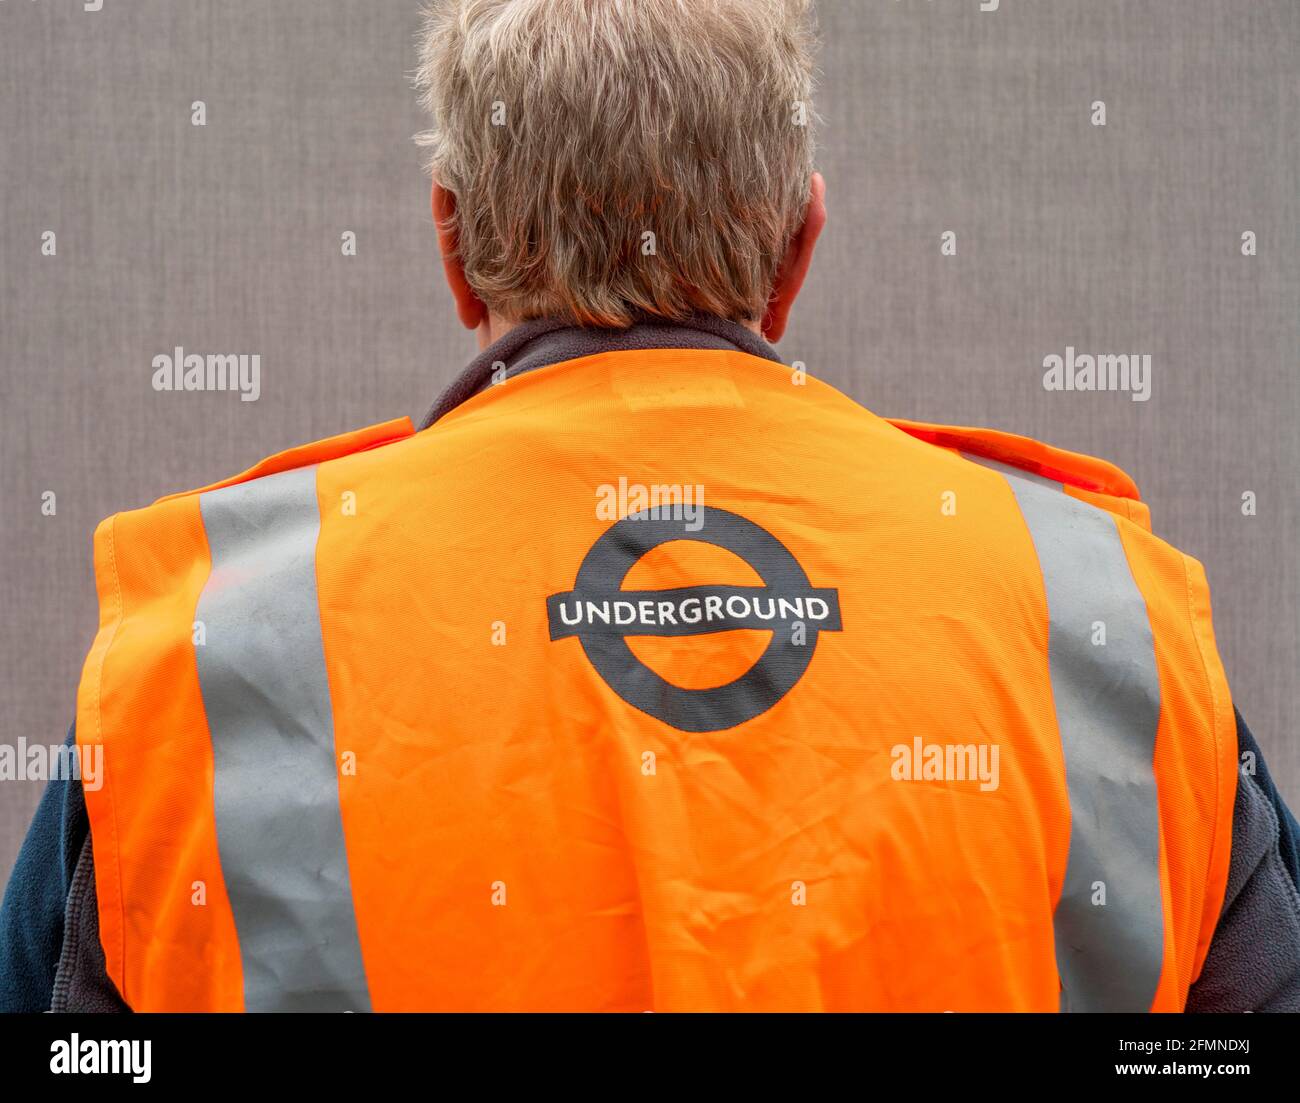 Nahaufnahme des Rückens eines älteren Mannes in Innenräumen, der eine orangefarbene Warnweste der Londoner U-Bahn trägt. Stockfoto